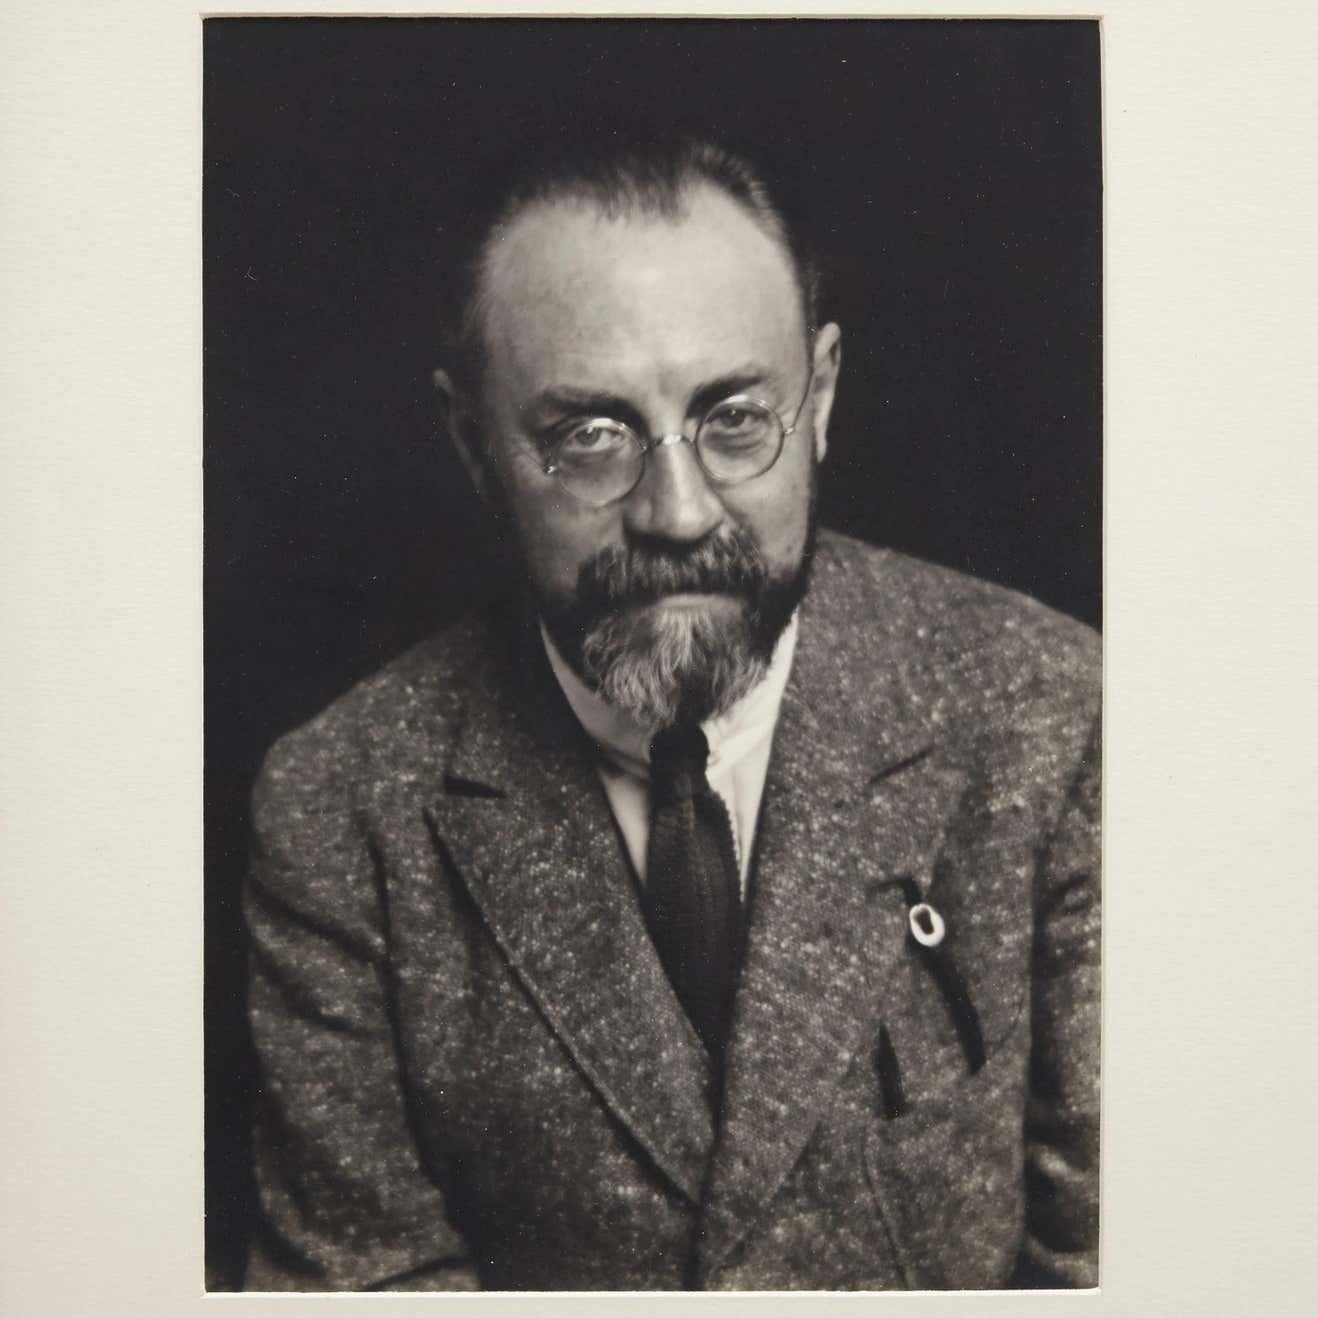 Portrait d'Henri Matisse photographié par Man Ray, vers 1930.

Un tirage posthume à partir du négatif original en 1977 par Pierre Gassmann.

Gélatine bromure d'argent.

Né (Philadelphie, 1890-Paris, 1976) Emmanuel Radnitzky, Man Ray adopte son